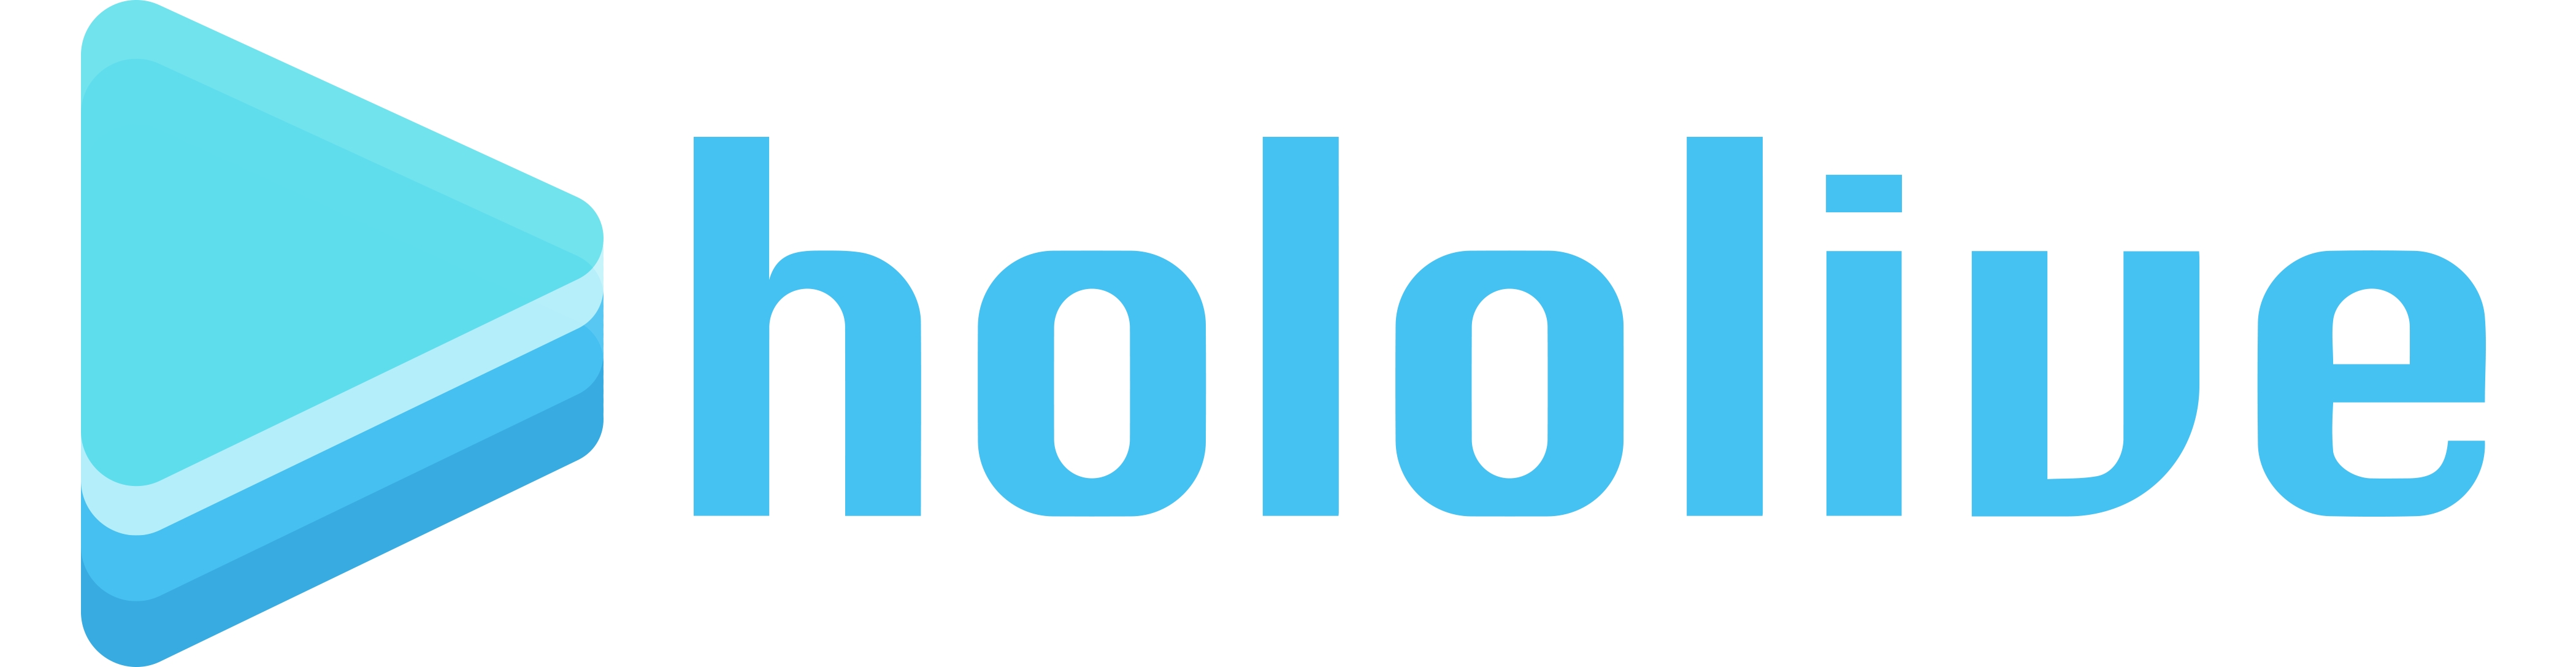 キャラクターに会えるライブ視聴アプリ Hololive ホロライブ 提供開始のお知らせ カバー株式会社のプレスリリース